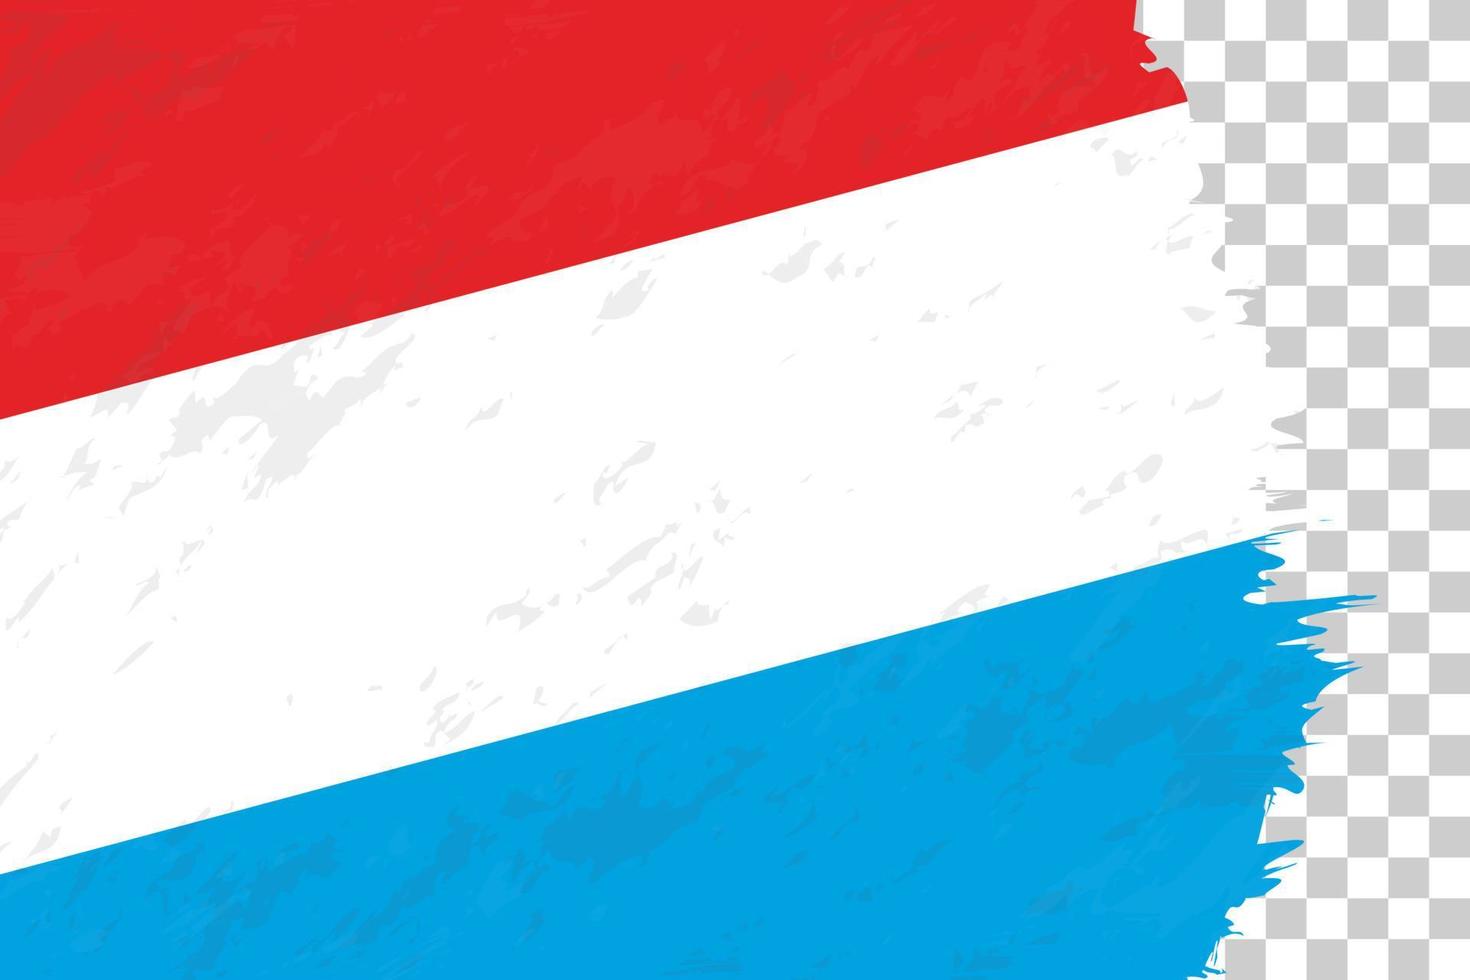 grunge astratto orizzontale spazzolato bandiera del lussemburgo sulla griglia trasparente. vettore